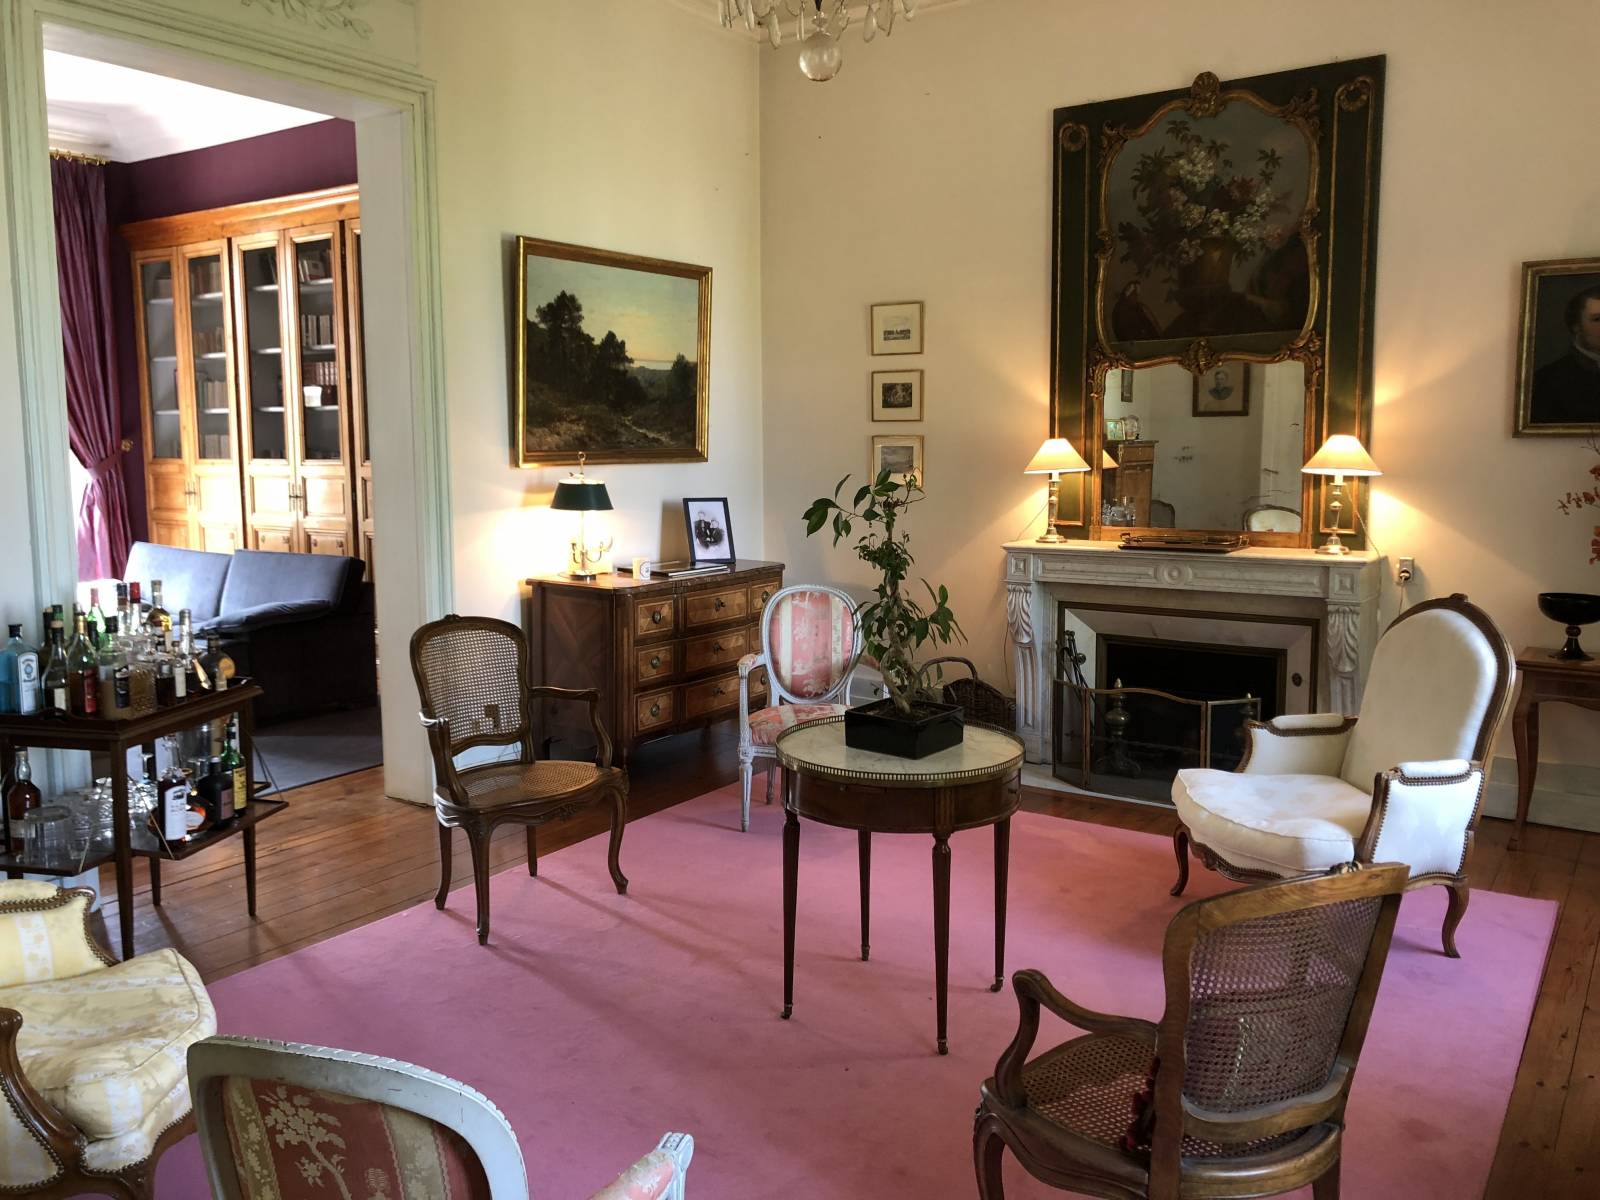 Le domaine du Pacha chambres d'hôtes de charme haut de gamme en bord de Garonne à Beautiran dans la région de Bordeaux